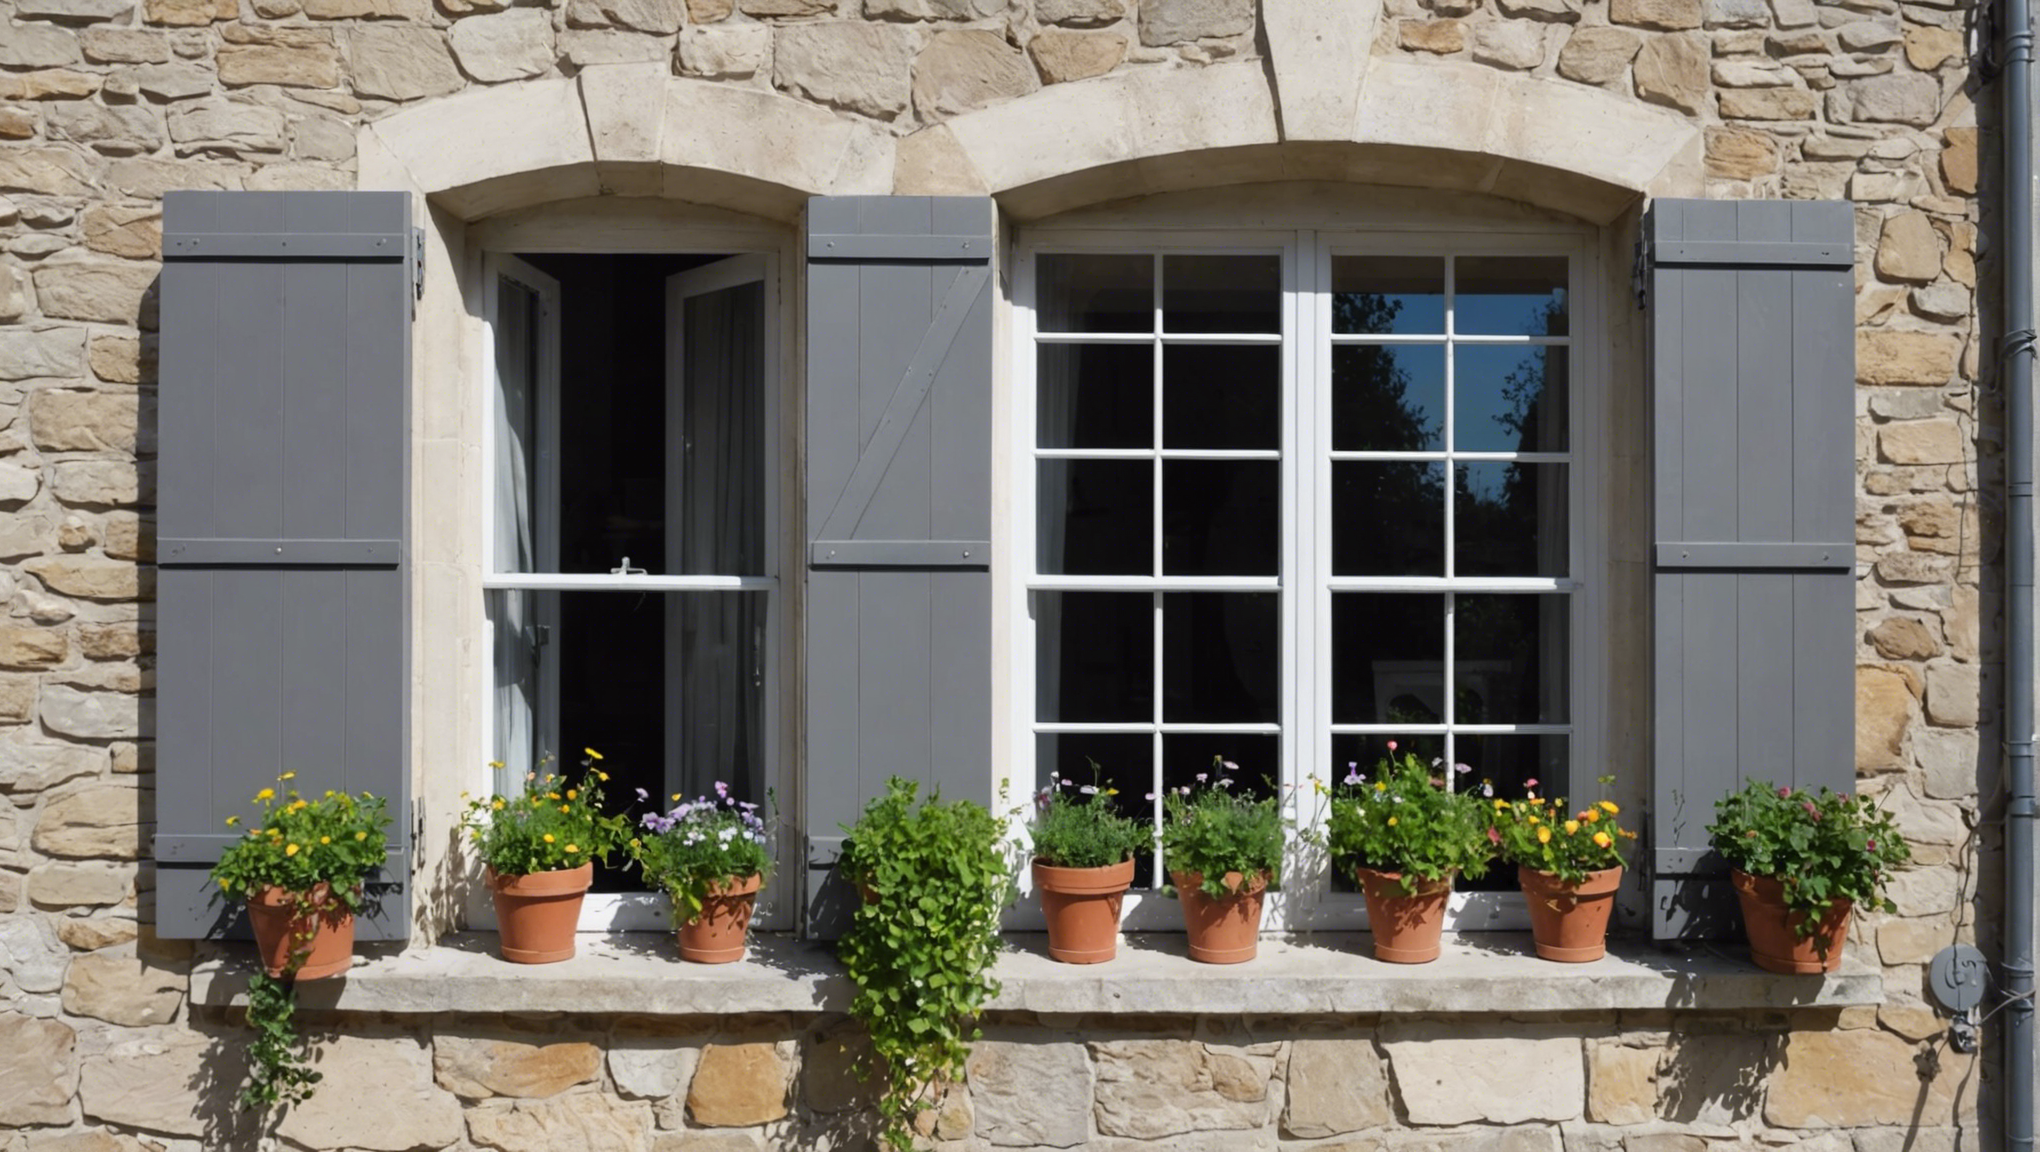 découvrez les avantages des fenêtres oscillo-battantes pour votre maison et trouvez la solution idéale pour allier confort et esthétique.